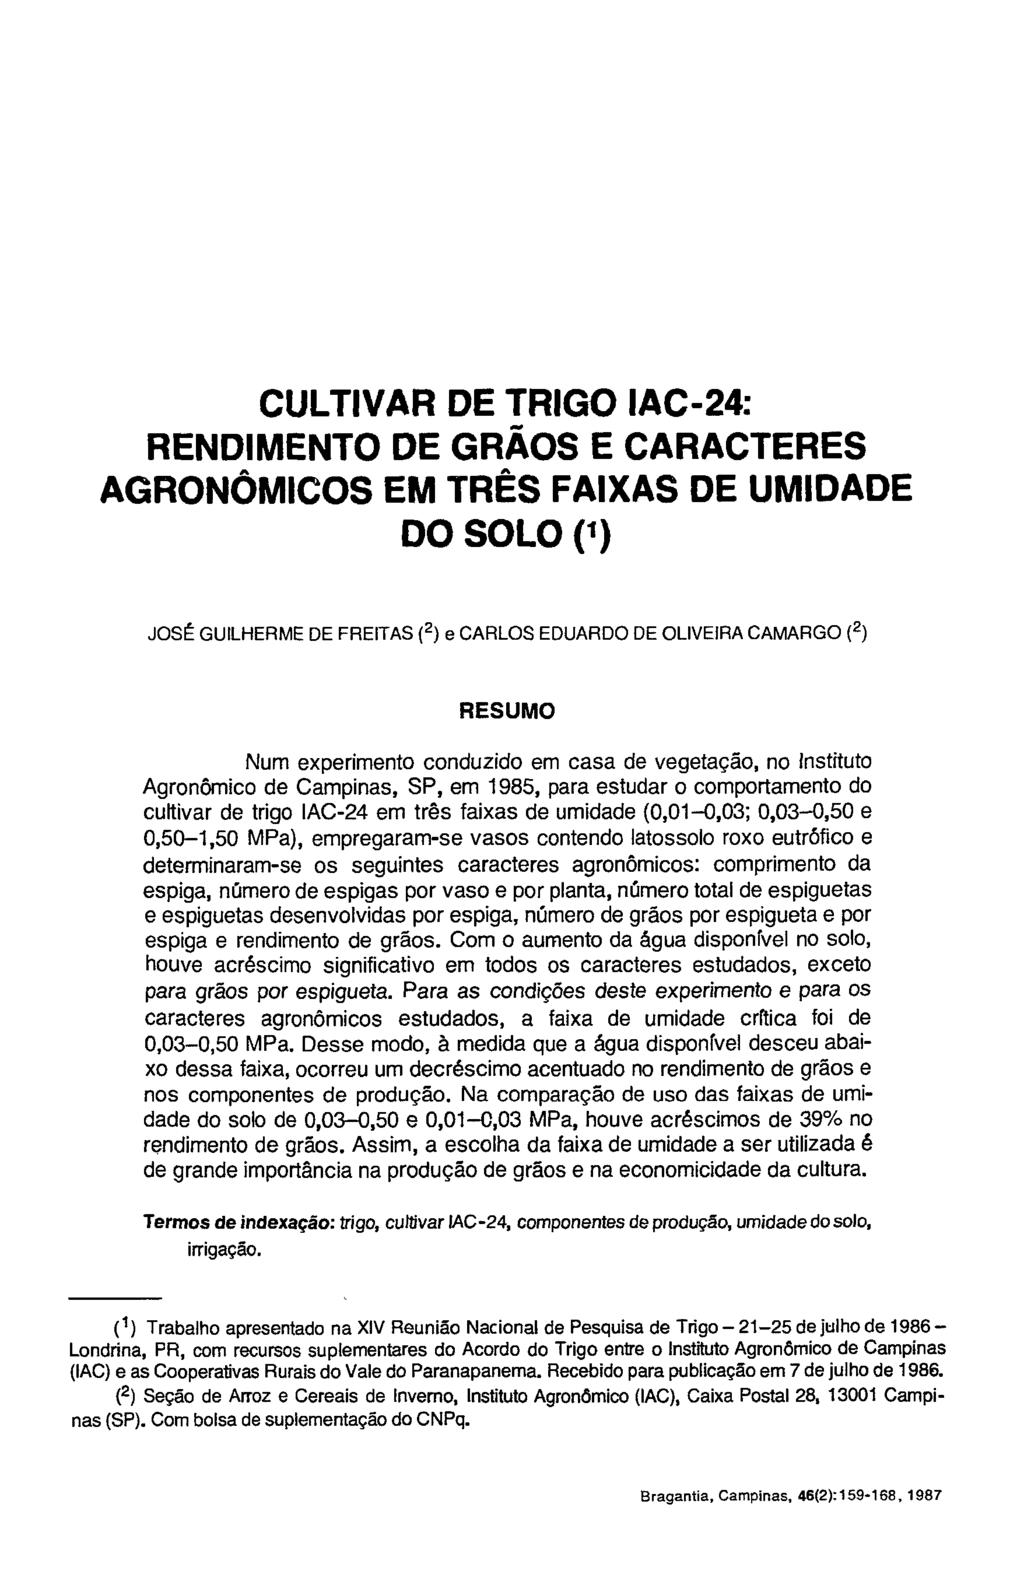 CULTIVAR DE TRIGO IAC-24: RENDIMENTO DE GRÃOS E CARACTERES AGRONÔMICOS EM TRÊS FAIXAS DE UMIDADE DO SOLO ( 1 ) JOSÉ GUILHERME DE FREITAS ( 2 ) e CARLOS EDUARDO DE OLIVEIRA CAMARGO ( 2 ) RESUMO Num